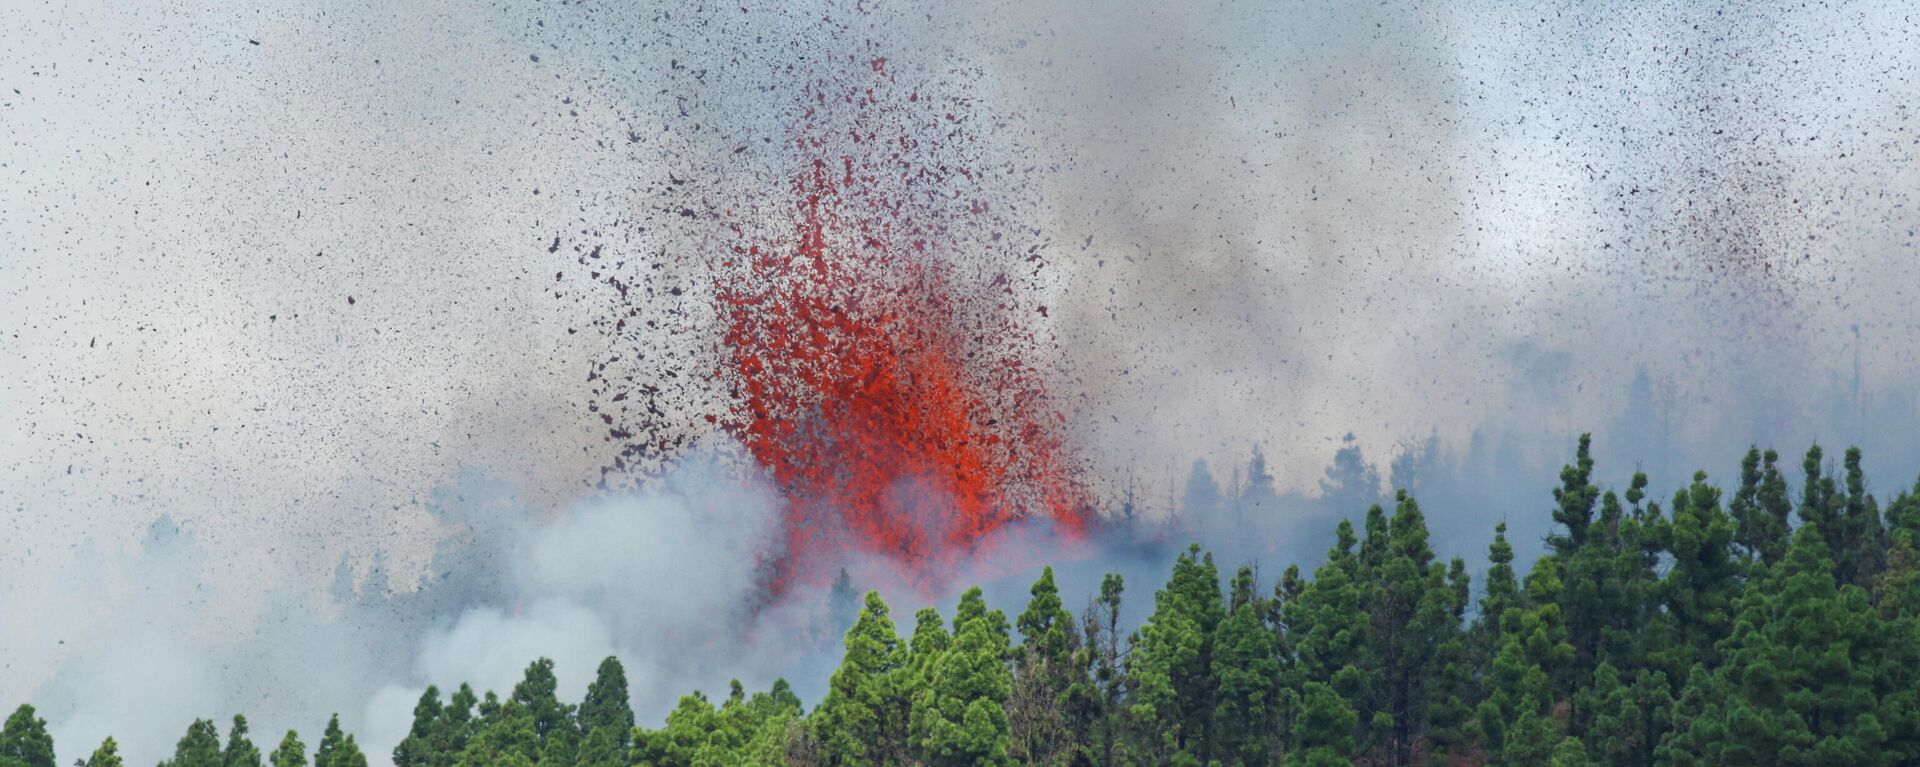 El volcán entra en erupción en la isla española de La Palma, España, 19 de septiembre de 2021 - Sputnik Mundo, 1920, 19.09.2021